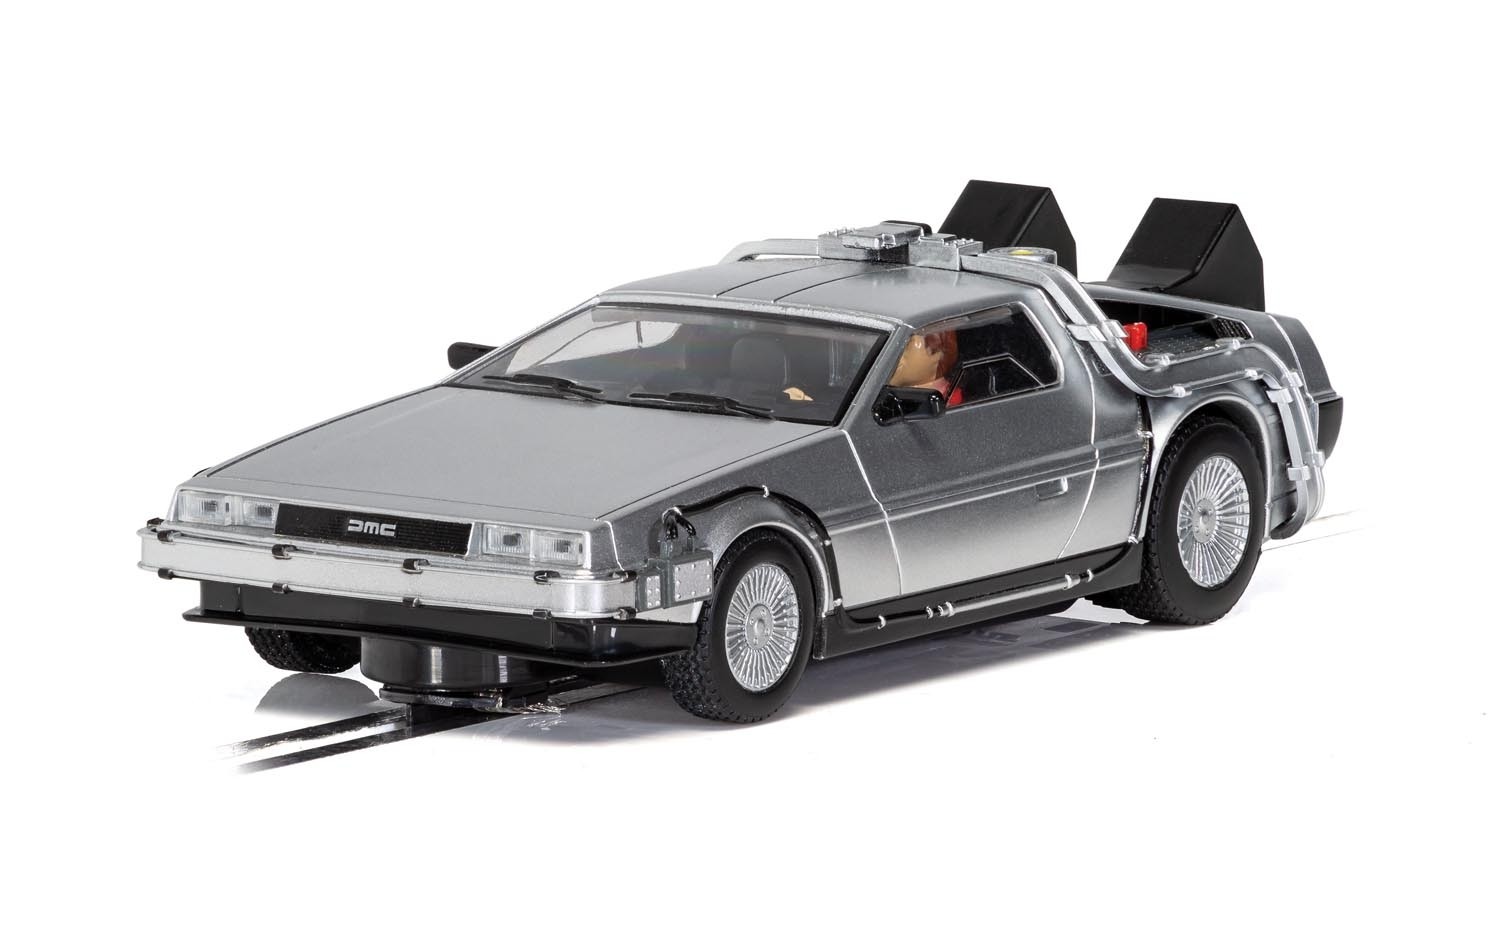 C4117 DeLorean "Back to the Future" car